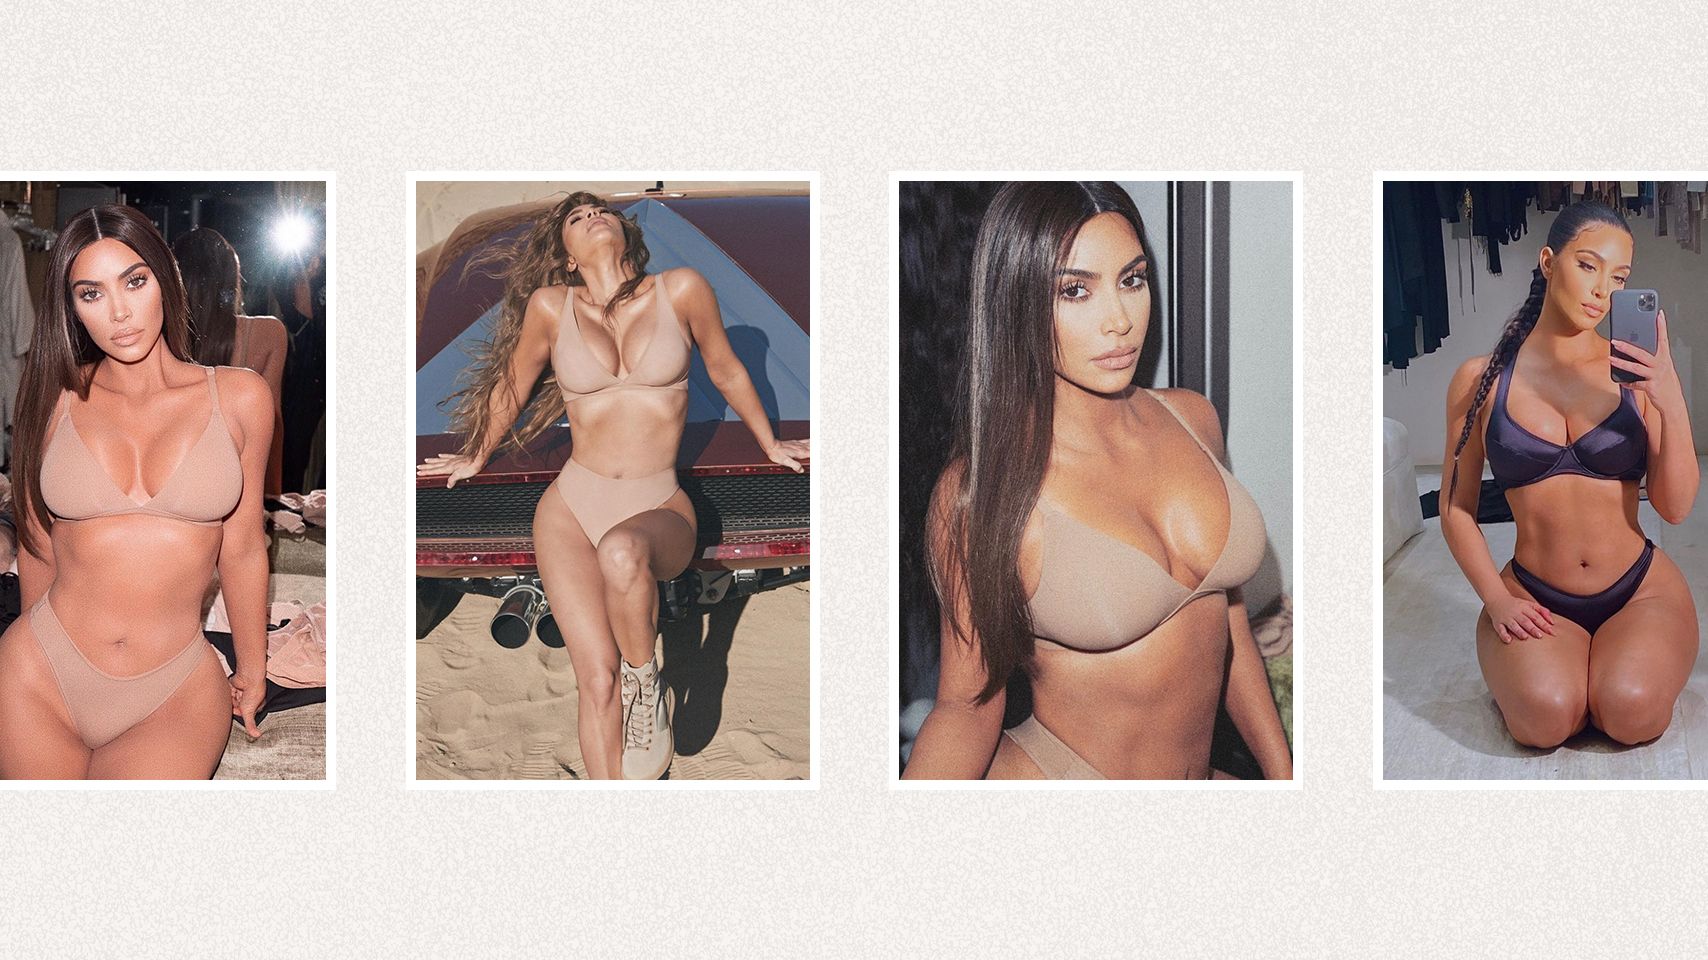 ashleigh freer share kim kardashian topless uncensored photos